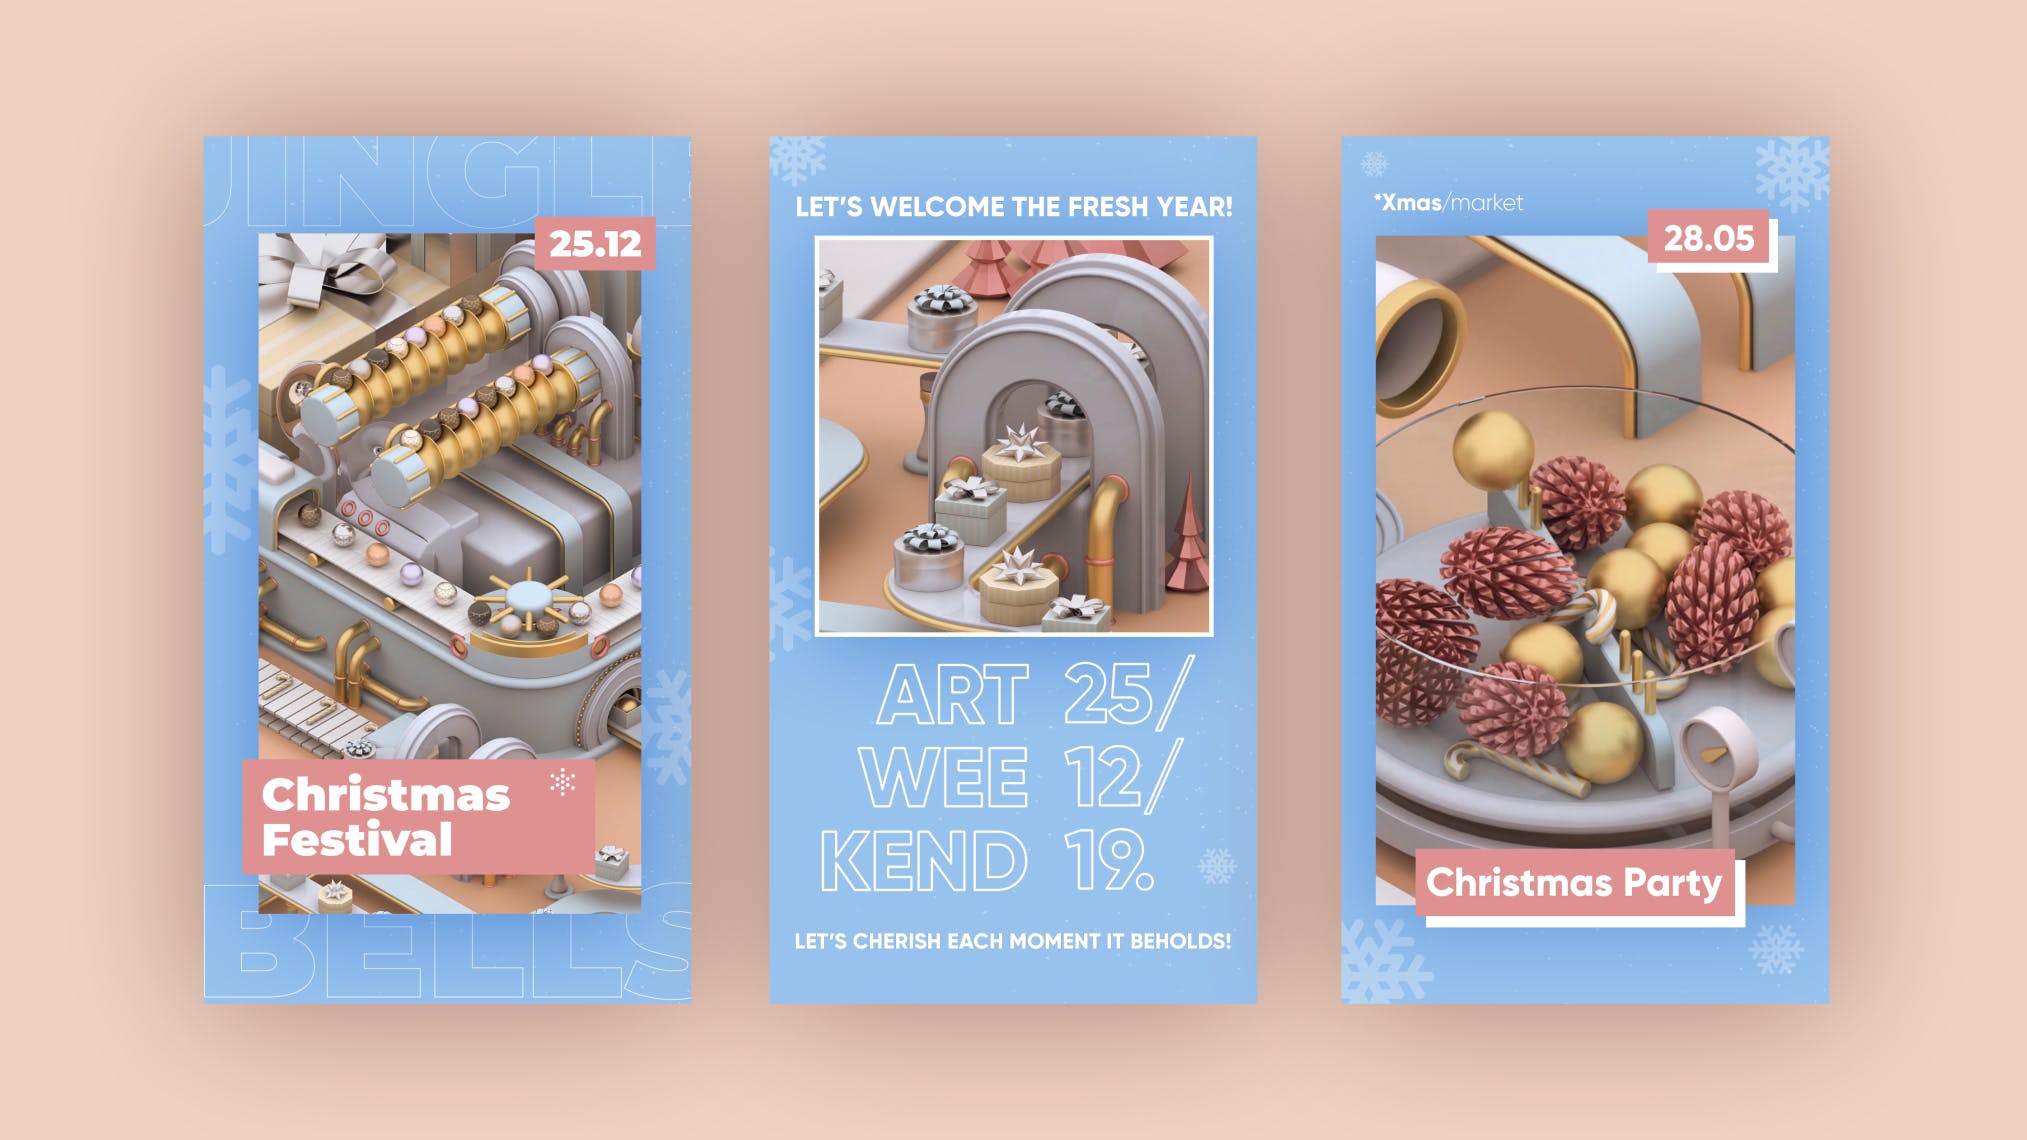 圣诞节3D建模工厂场景背景品牌故事/促销广告模板 Christmas Stories插图(13)